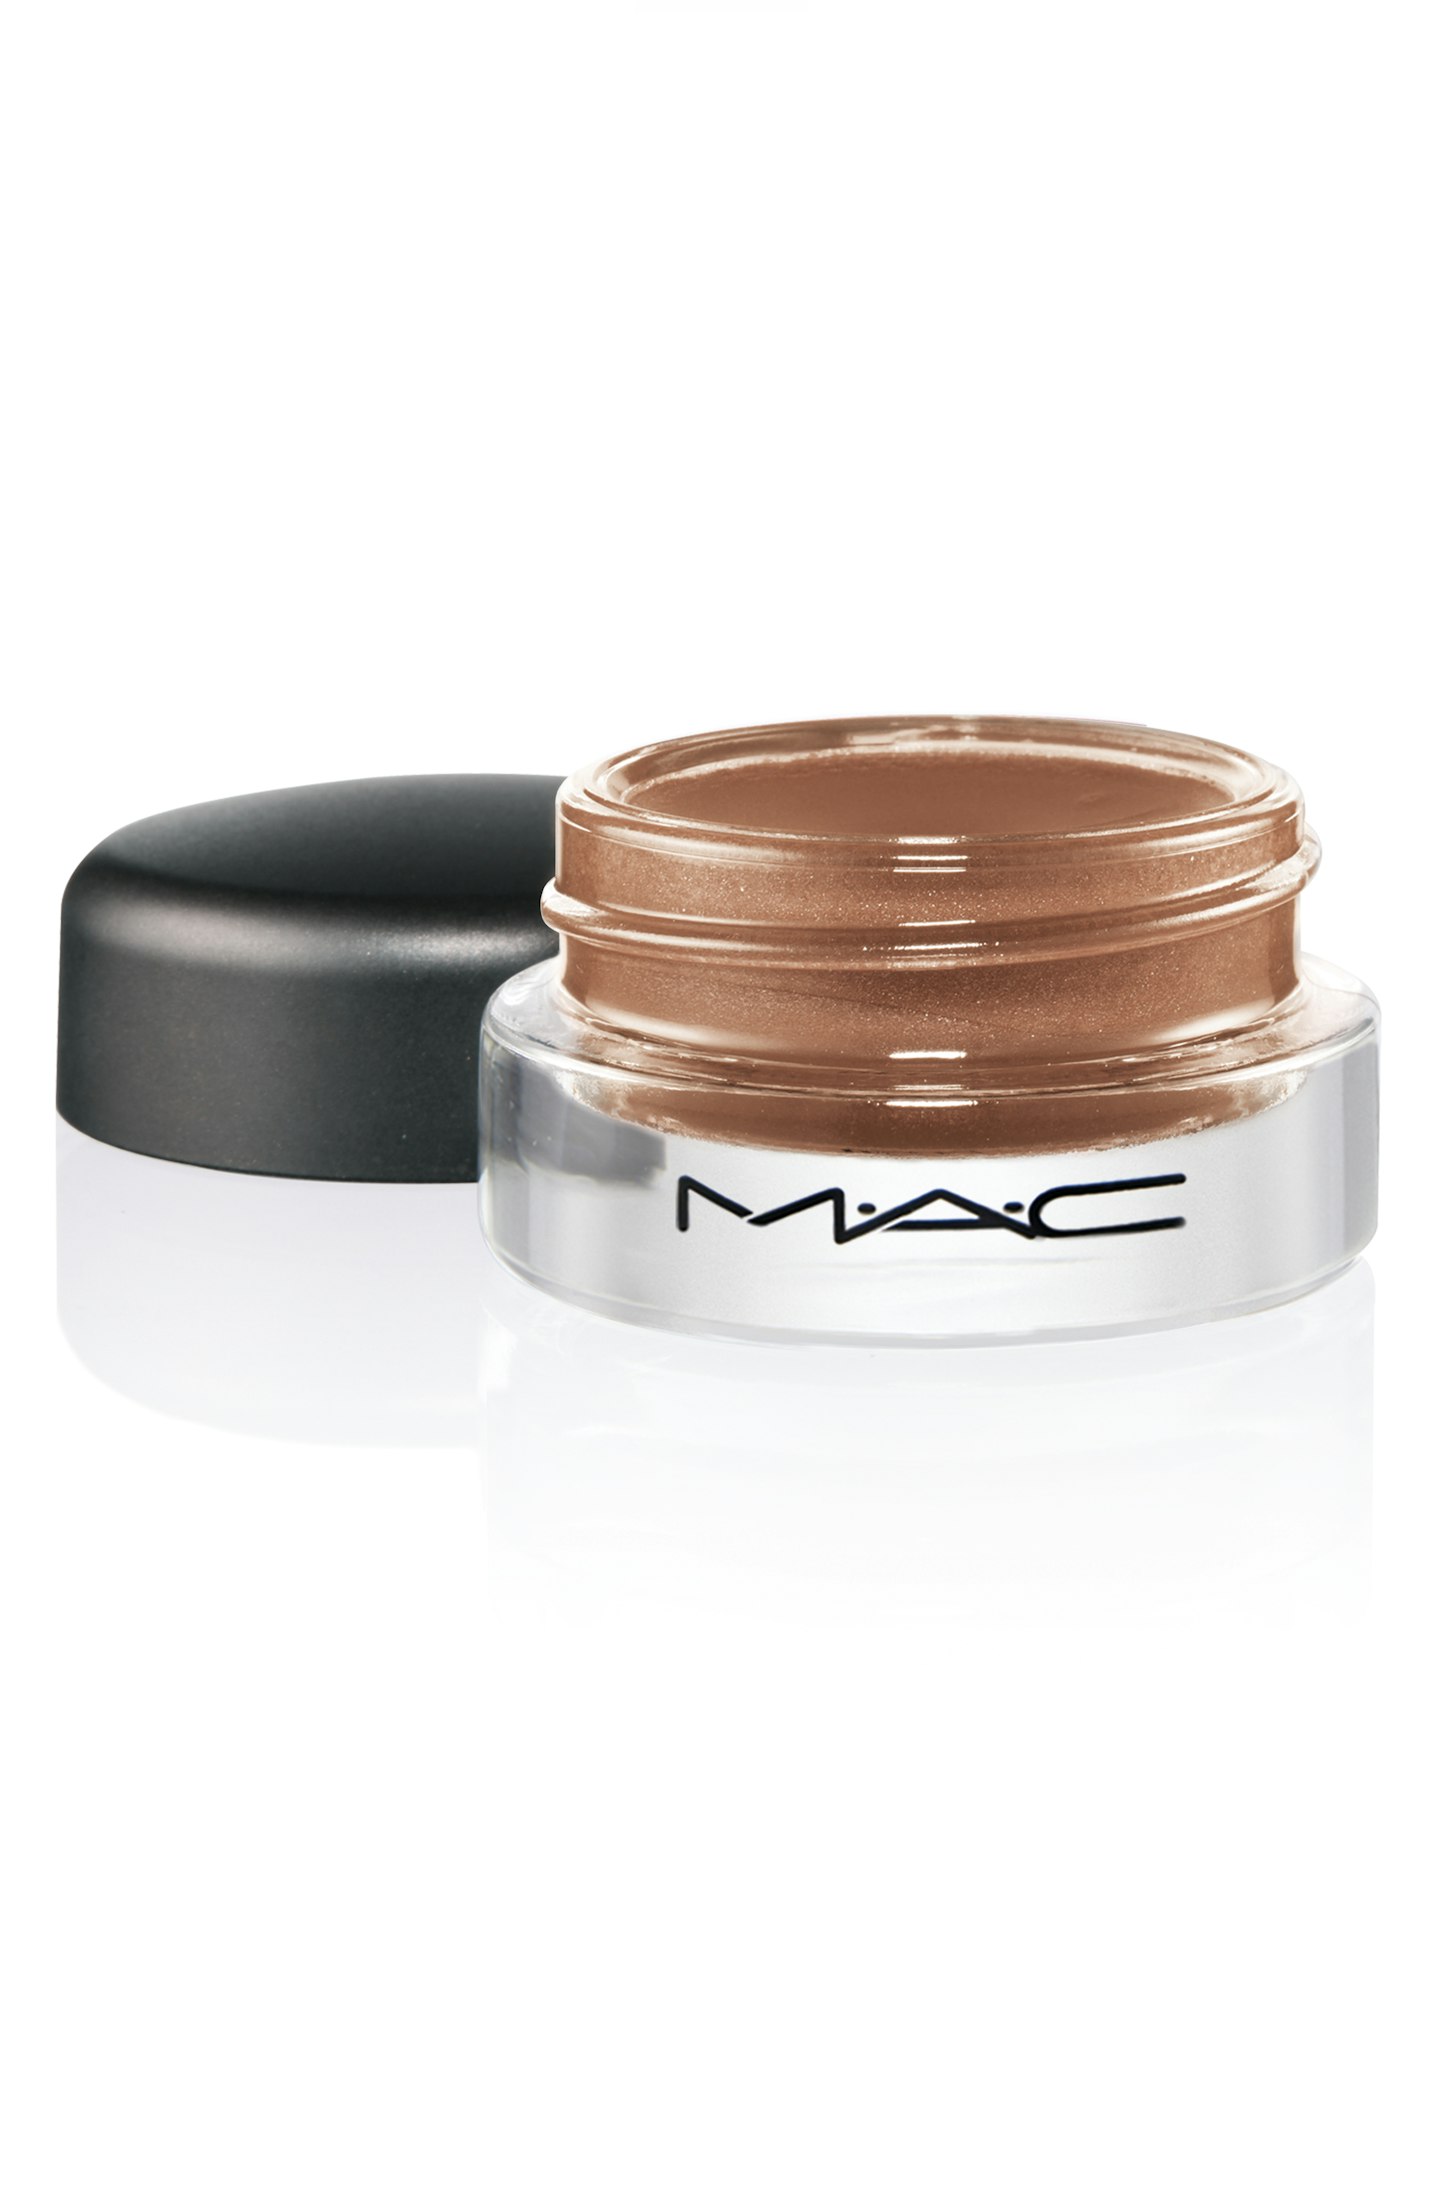 MAC Cosmetics Pro Longwear Paint Pot in Groundwork, £16.50